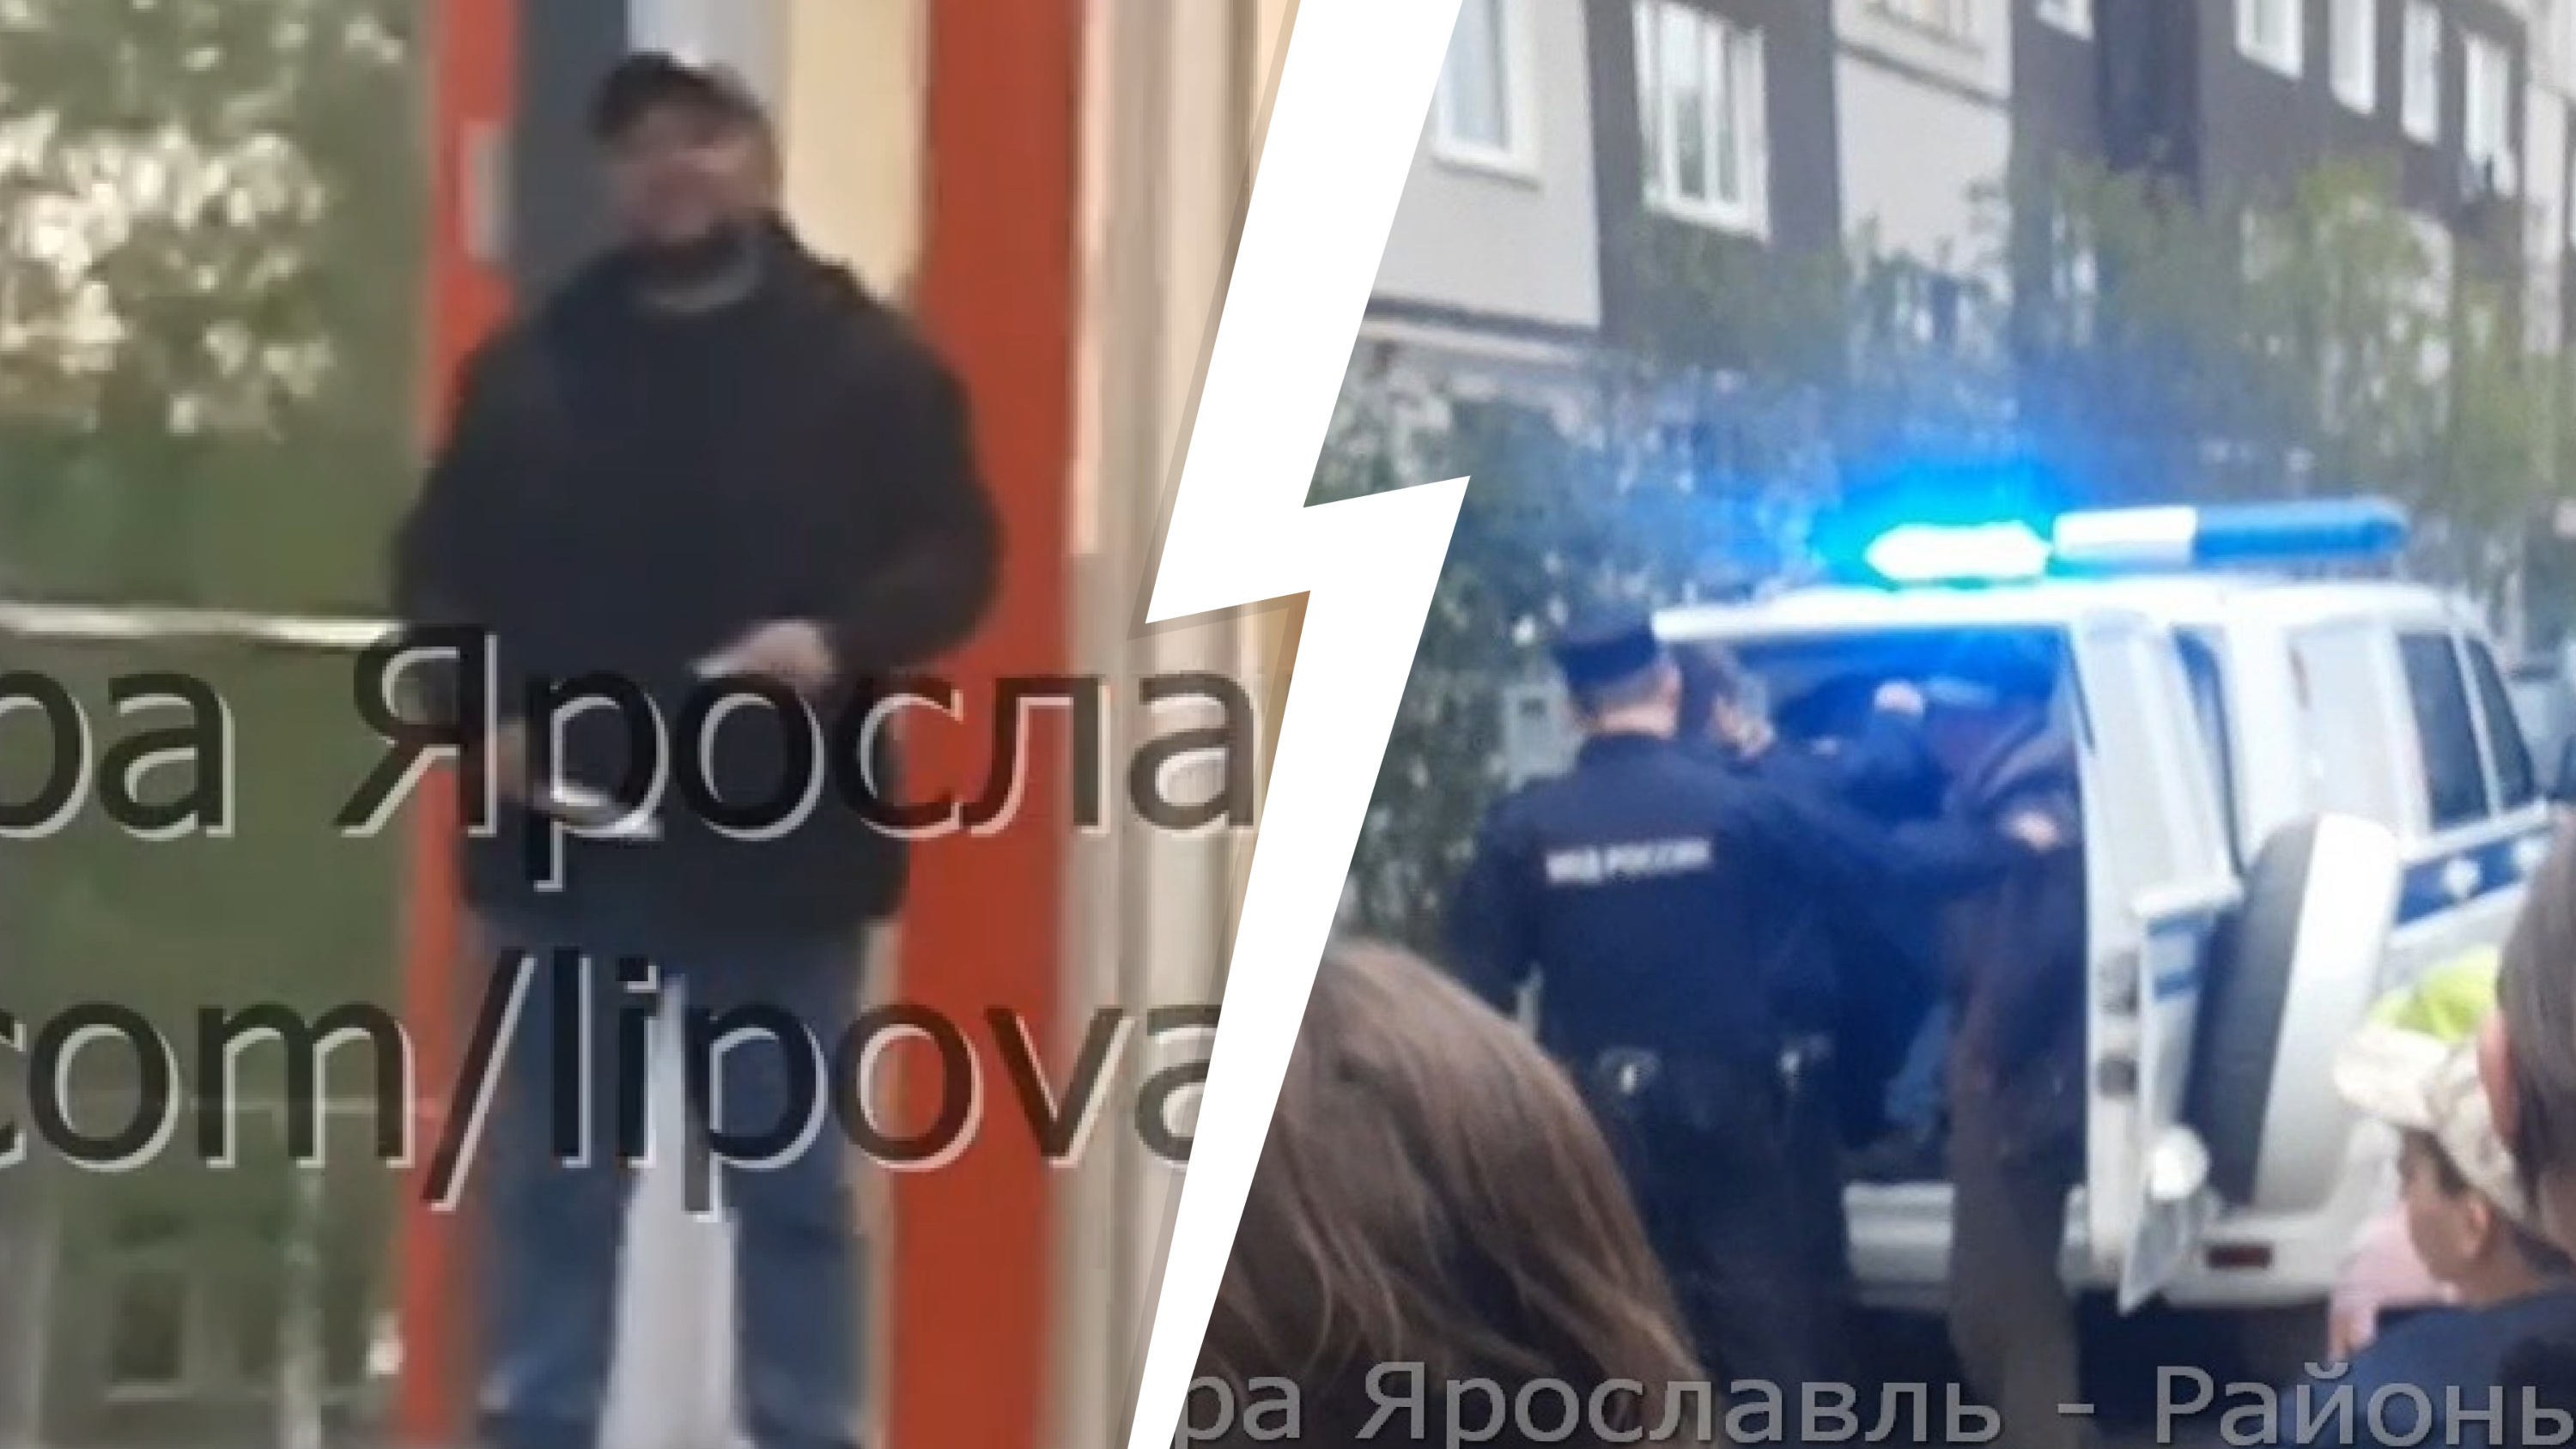 «Угрожал детям»: в Ярославле мужчина с ножом напугал прохожих. Видео